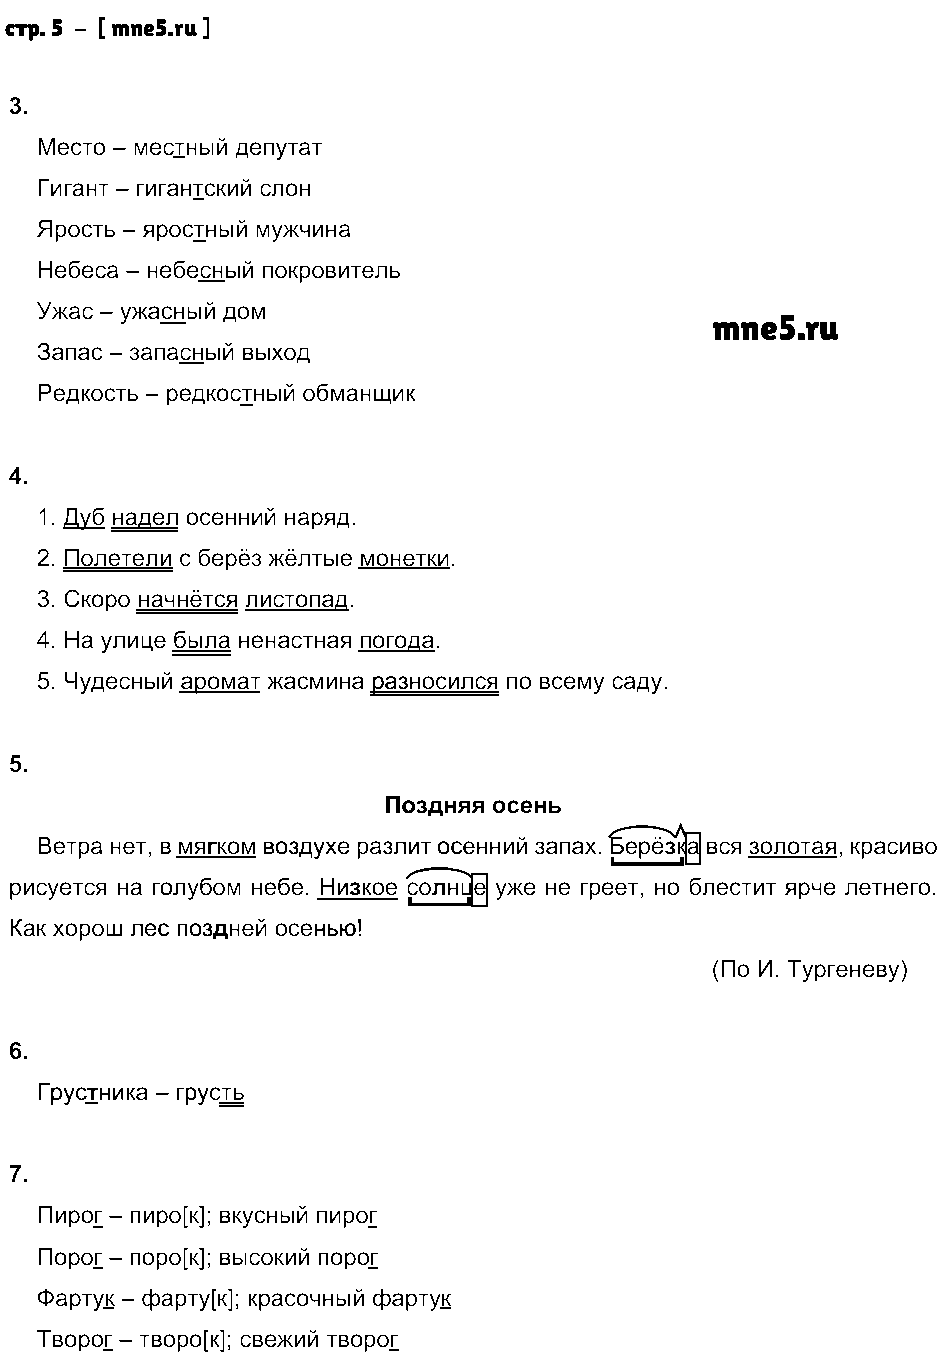 ГДЗ Русский язык 5 класс - стр. 5